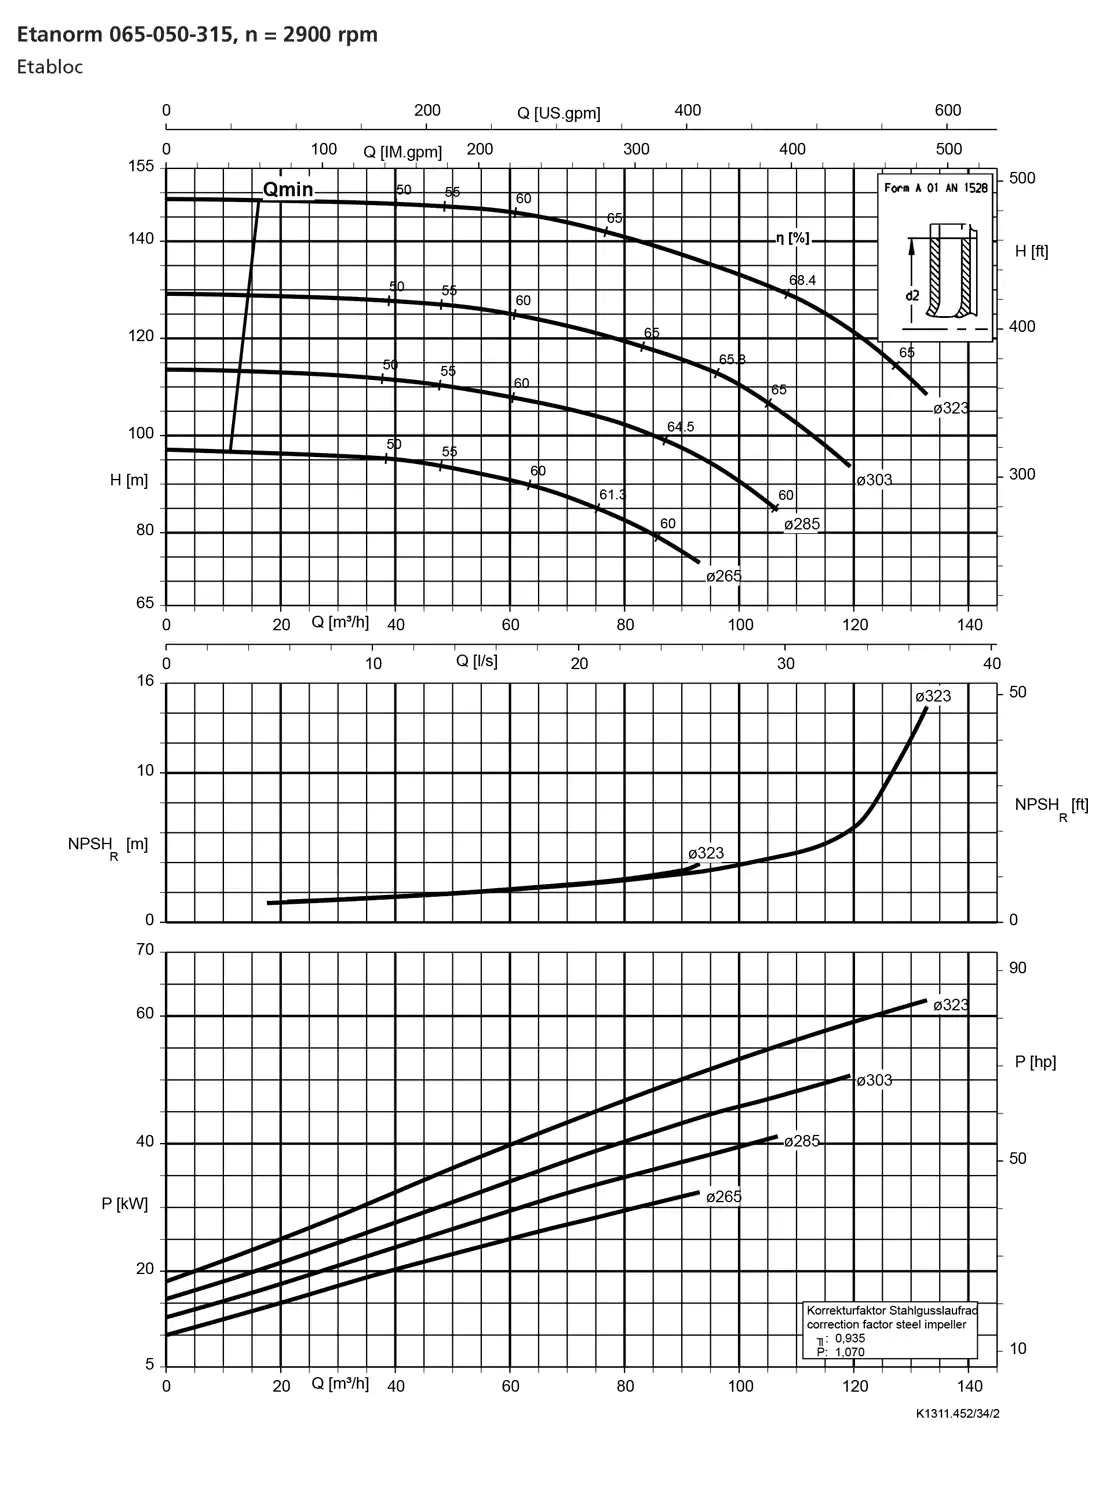 نمودار-کارکرد-پمپ-etanorm-syt-65-050-315-2900